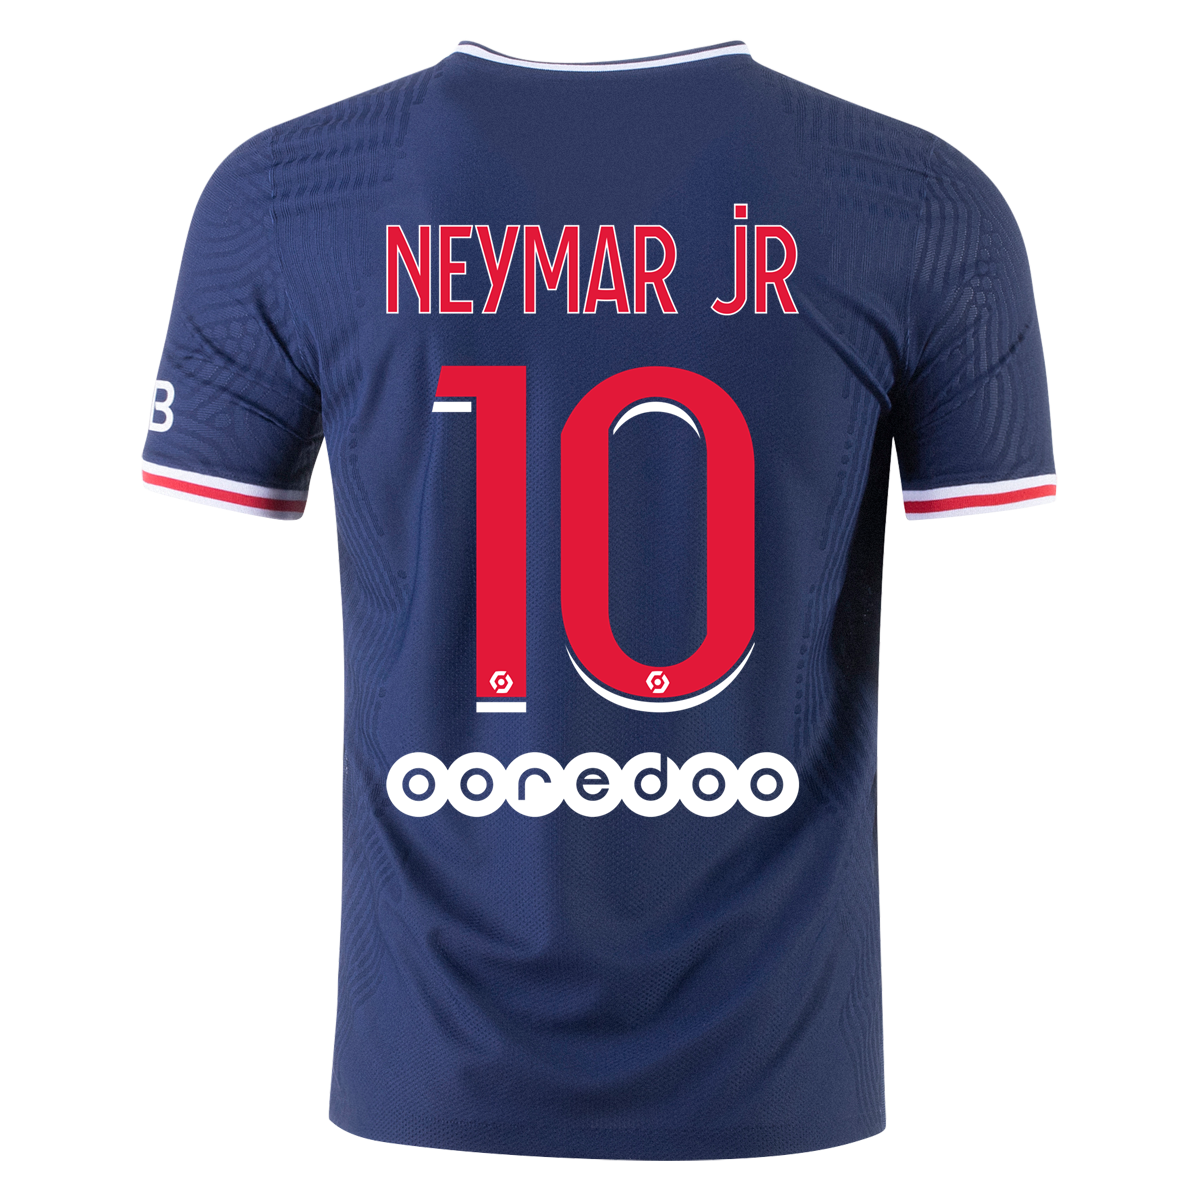 neymar jr jersey